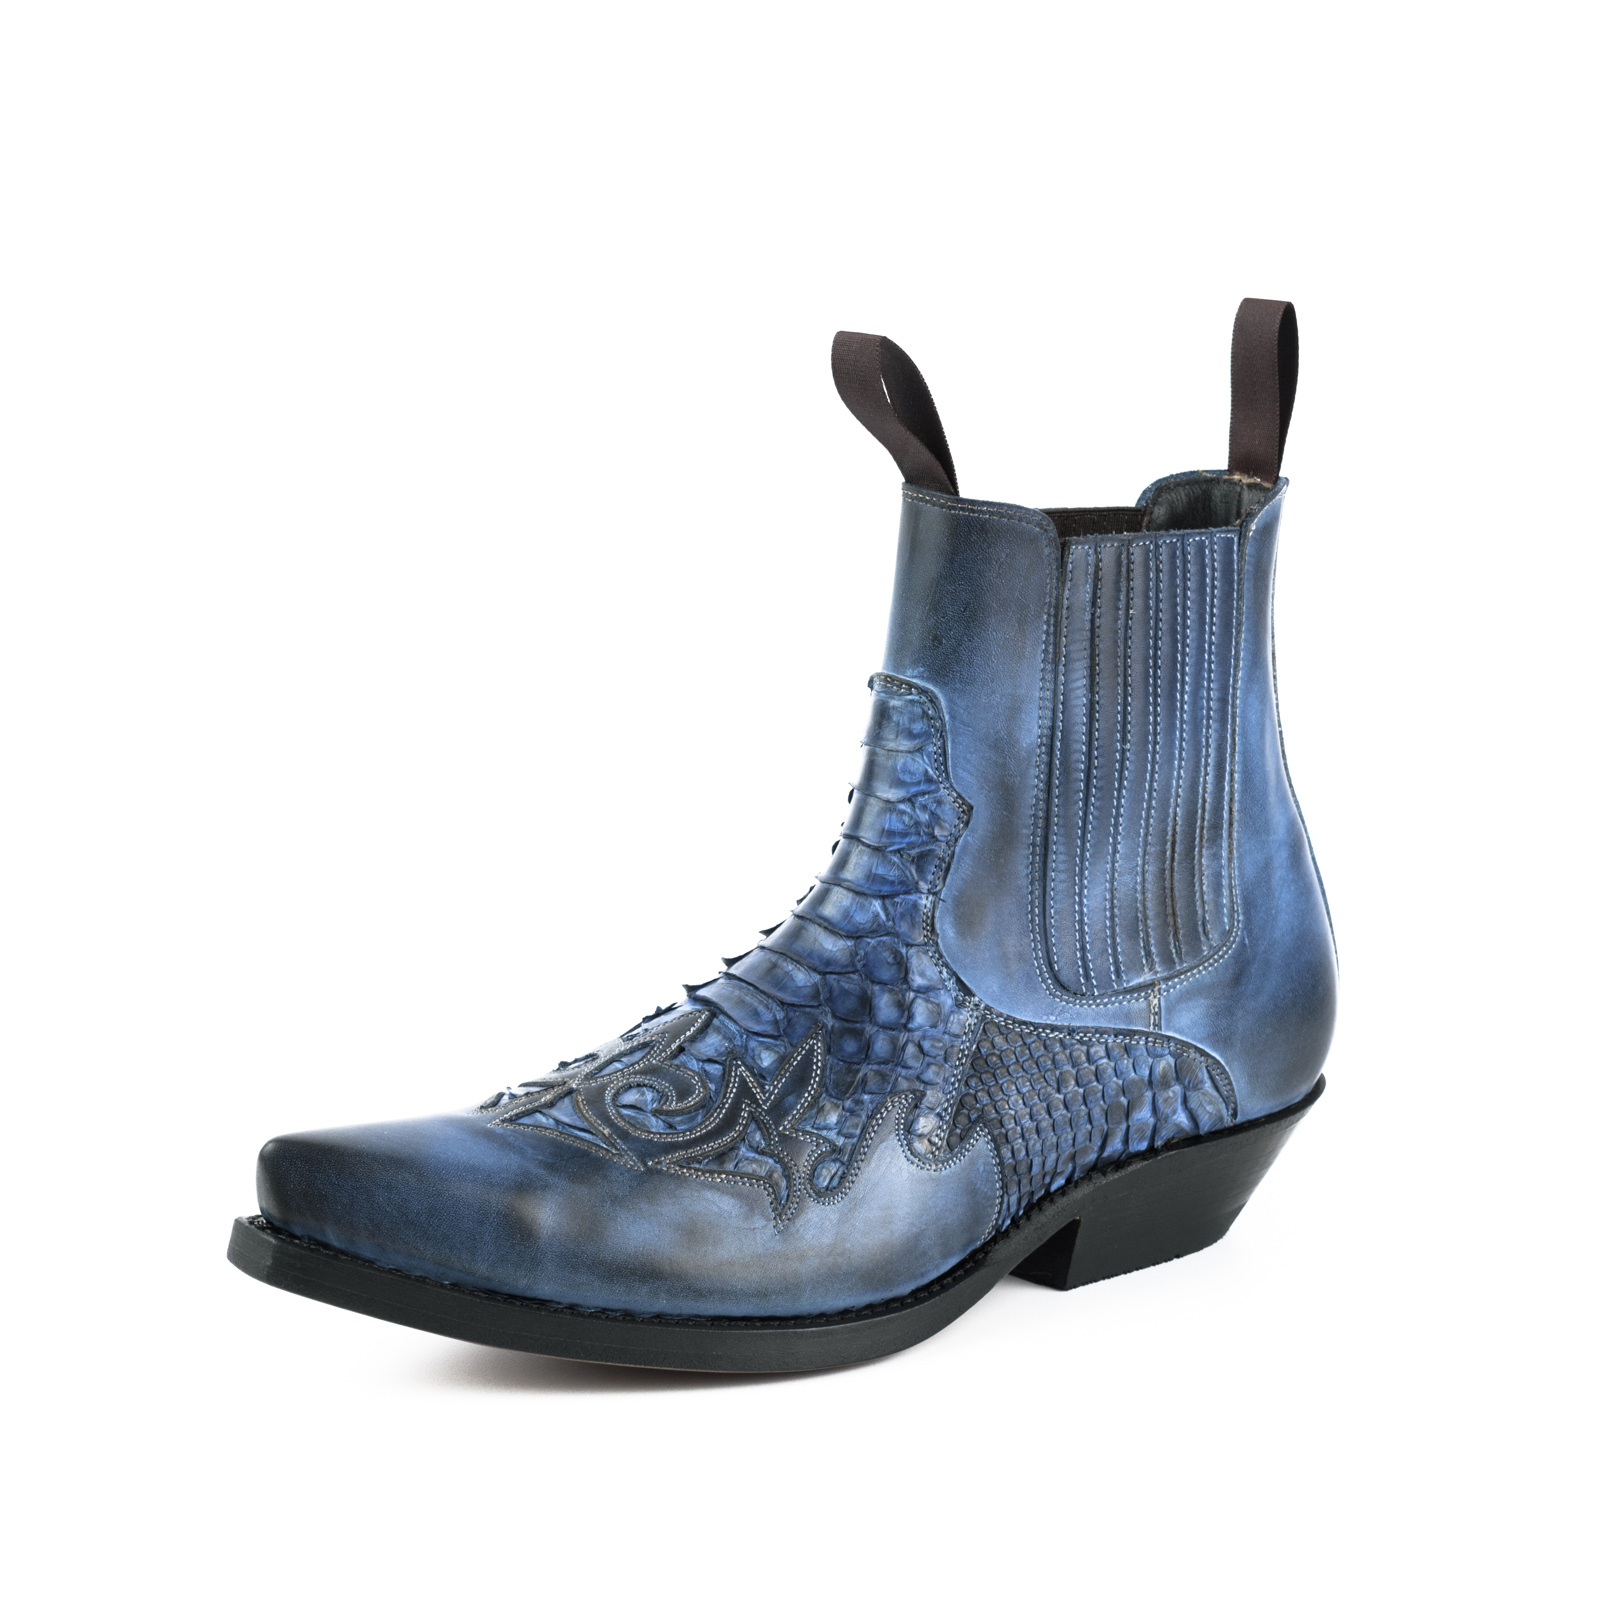 mayura-boots-rock-2500-azul-1